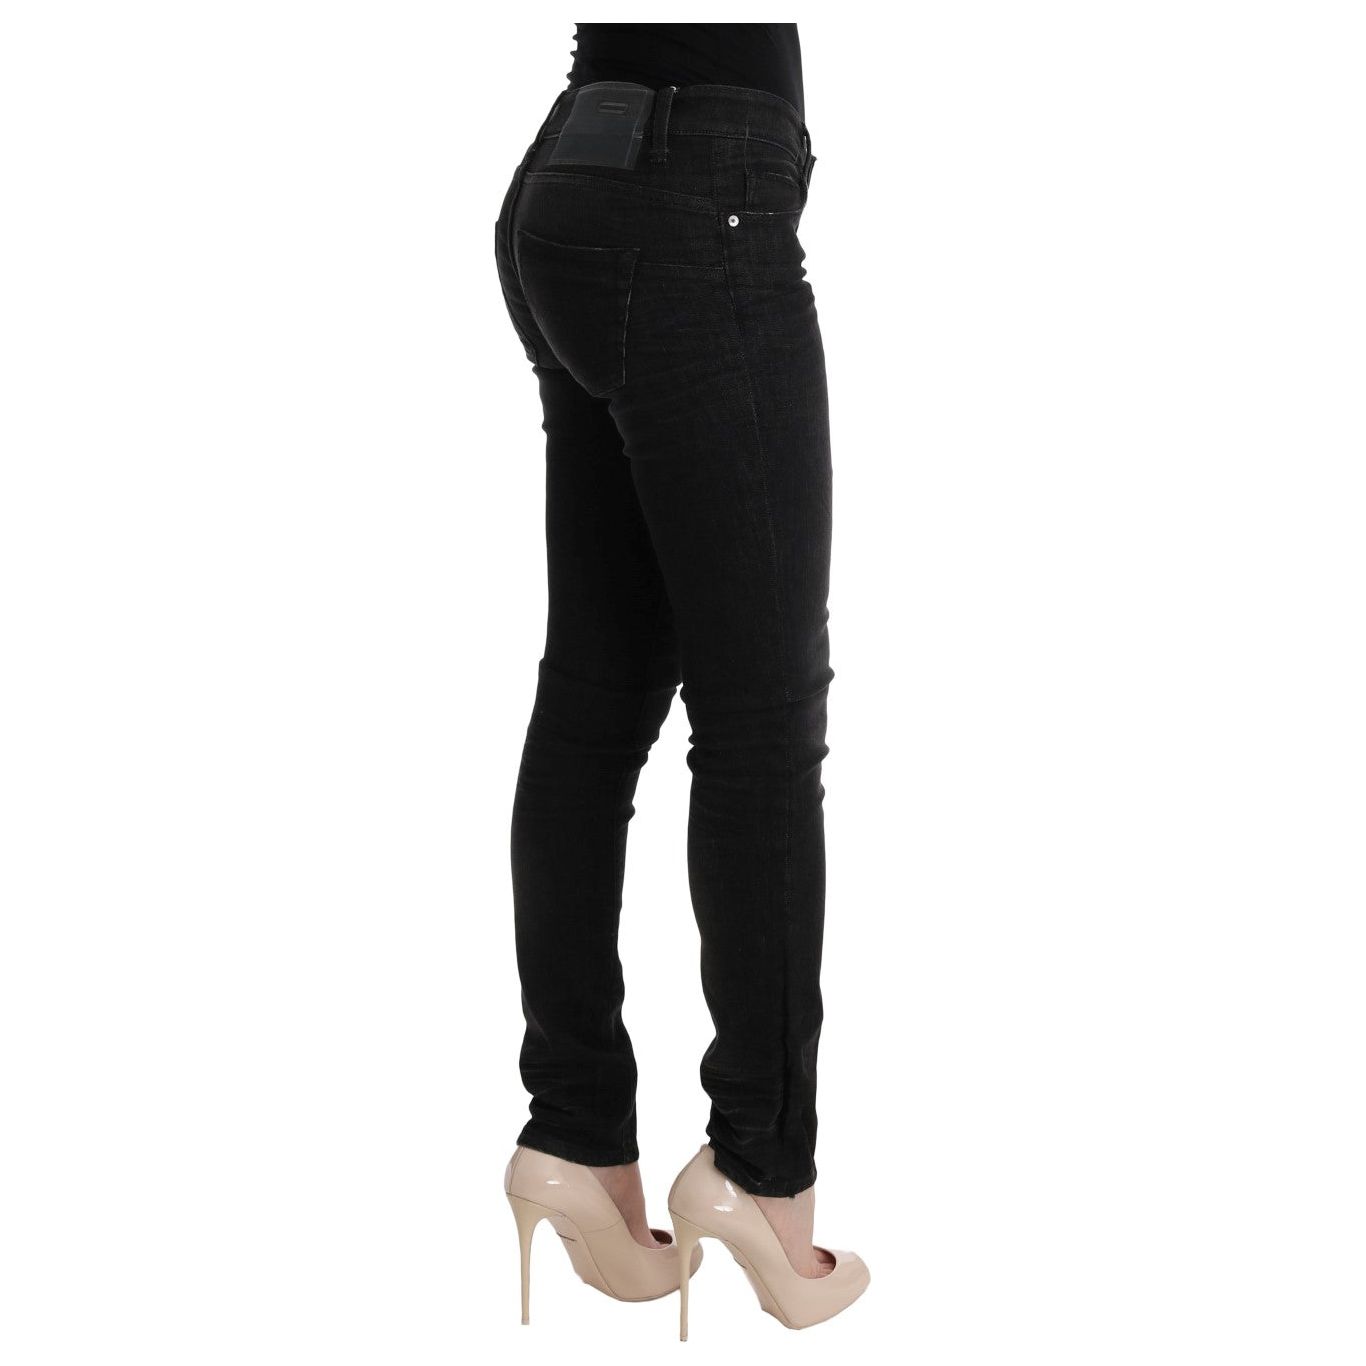 Acht Chic Slim Fit Black Cotton Jeans Jeans & Pants black-denim-cotton-bottoms-slim-fit-jeans